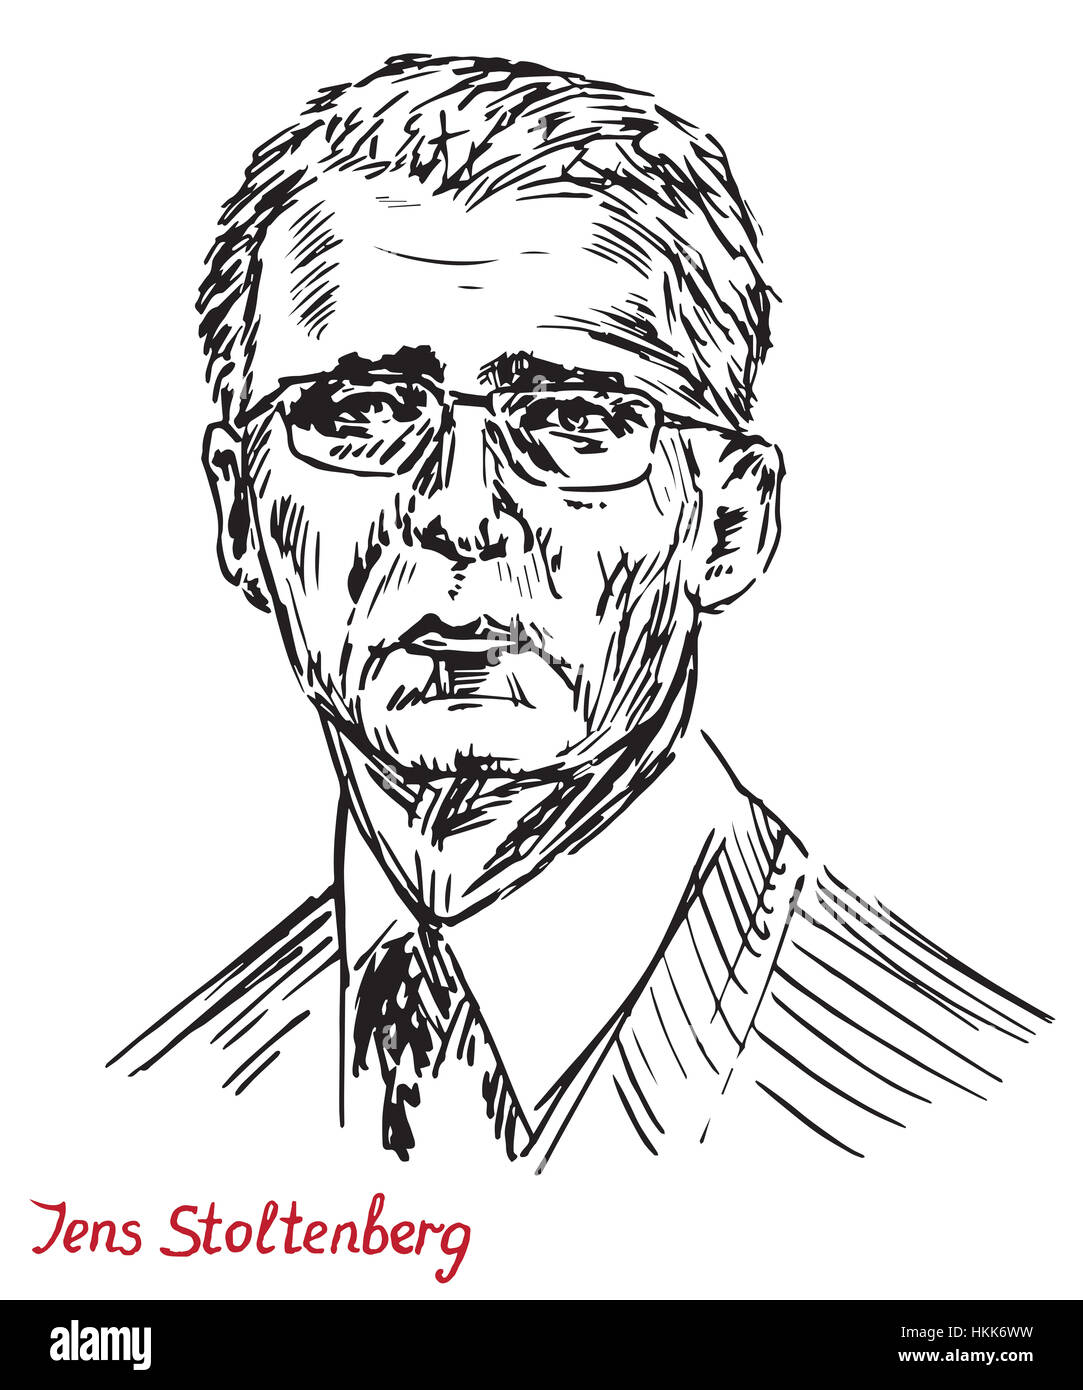 Jens Stoltenberg, norwegischer Politiker und Generalsekretär der 13. von der North Atlantic Treaty Organization (NATO), von hand gezeichnet, Abbildung Stockfoto